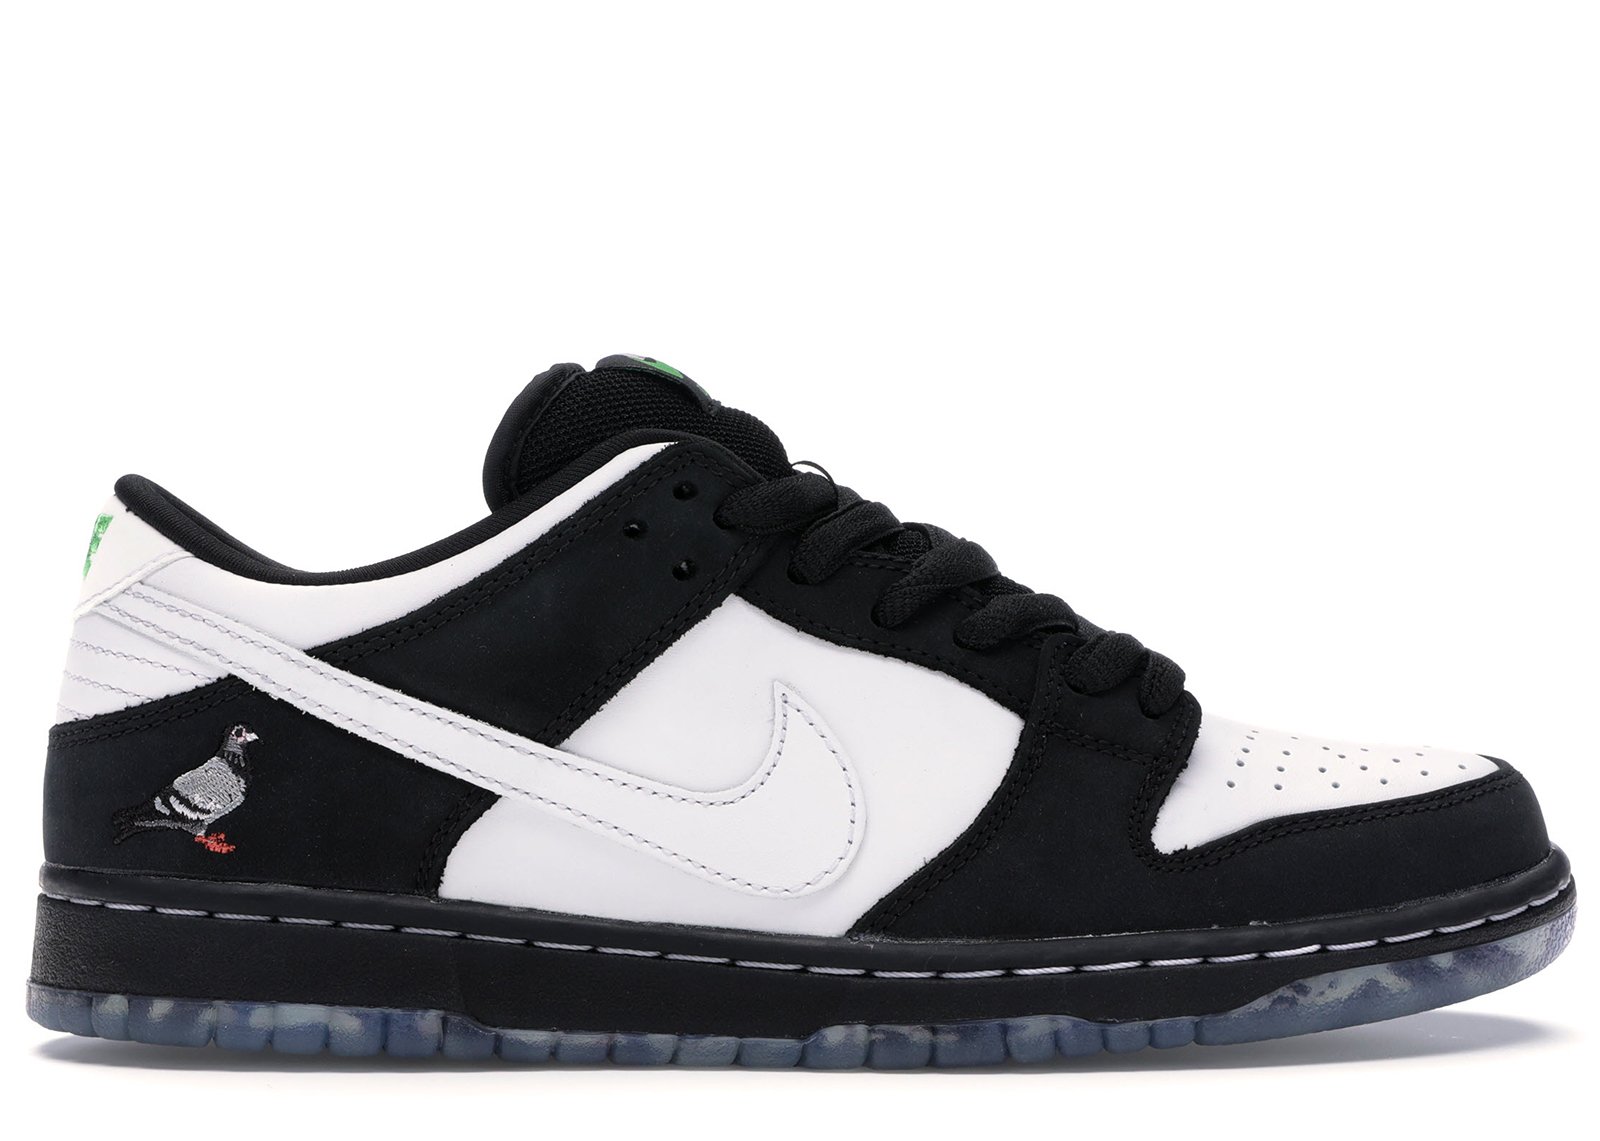 Nike SB Dunk Low Staple Panda Pigeon sneakers